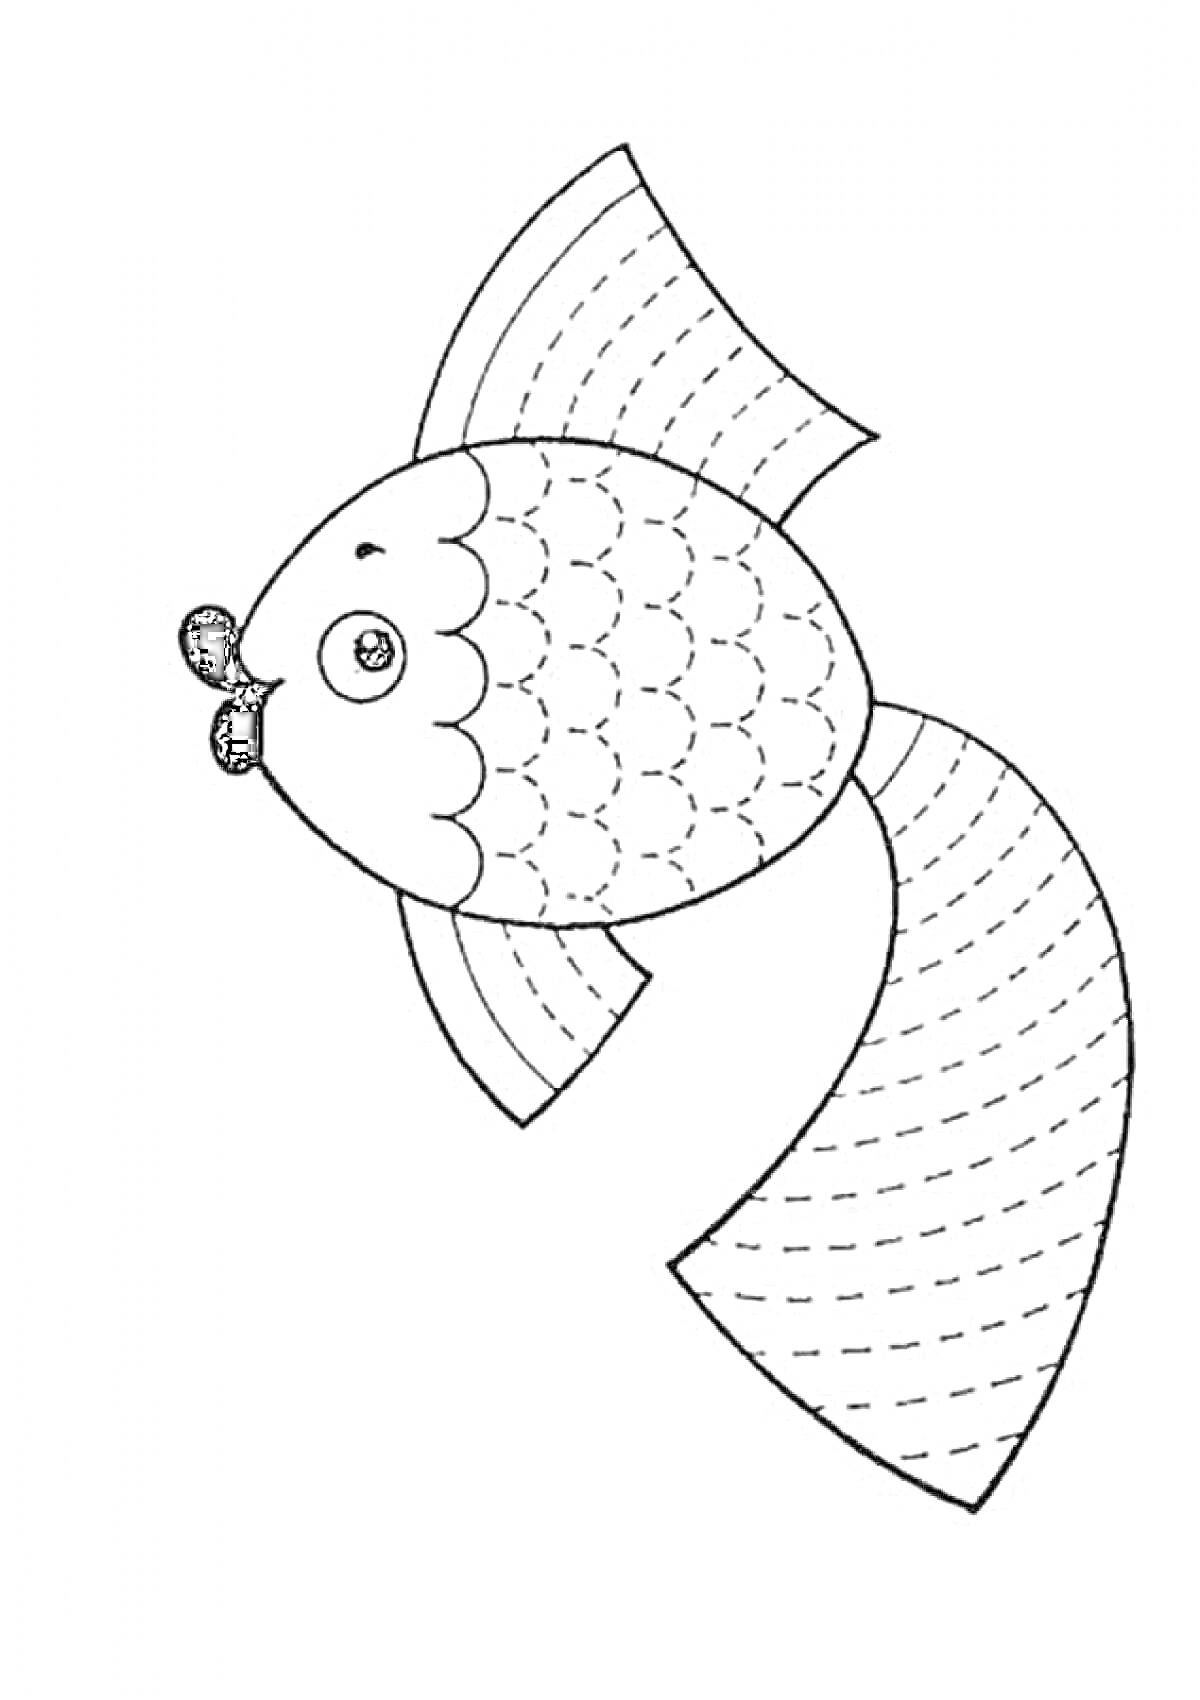 Рыбка с узорами штриховки на хвосте и плавниках